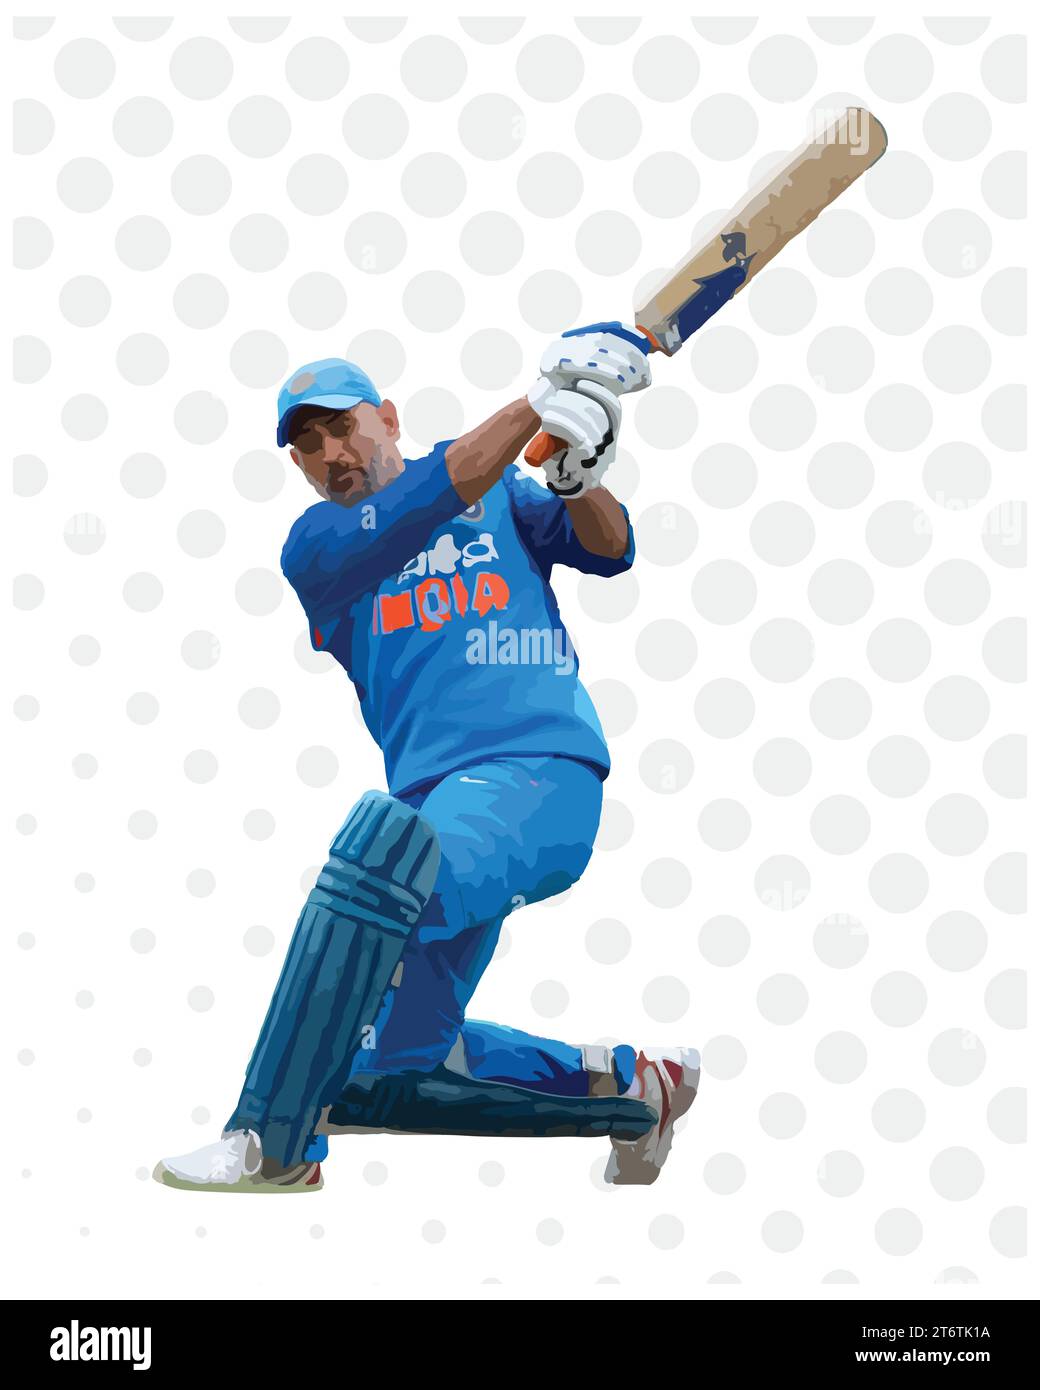 Frau Dhoni ein indischer Cricketspieler Dot Hintergrund, Vektor-Illustration abstraktes editierbares Bild Stock Vektor